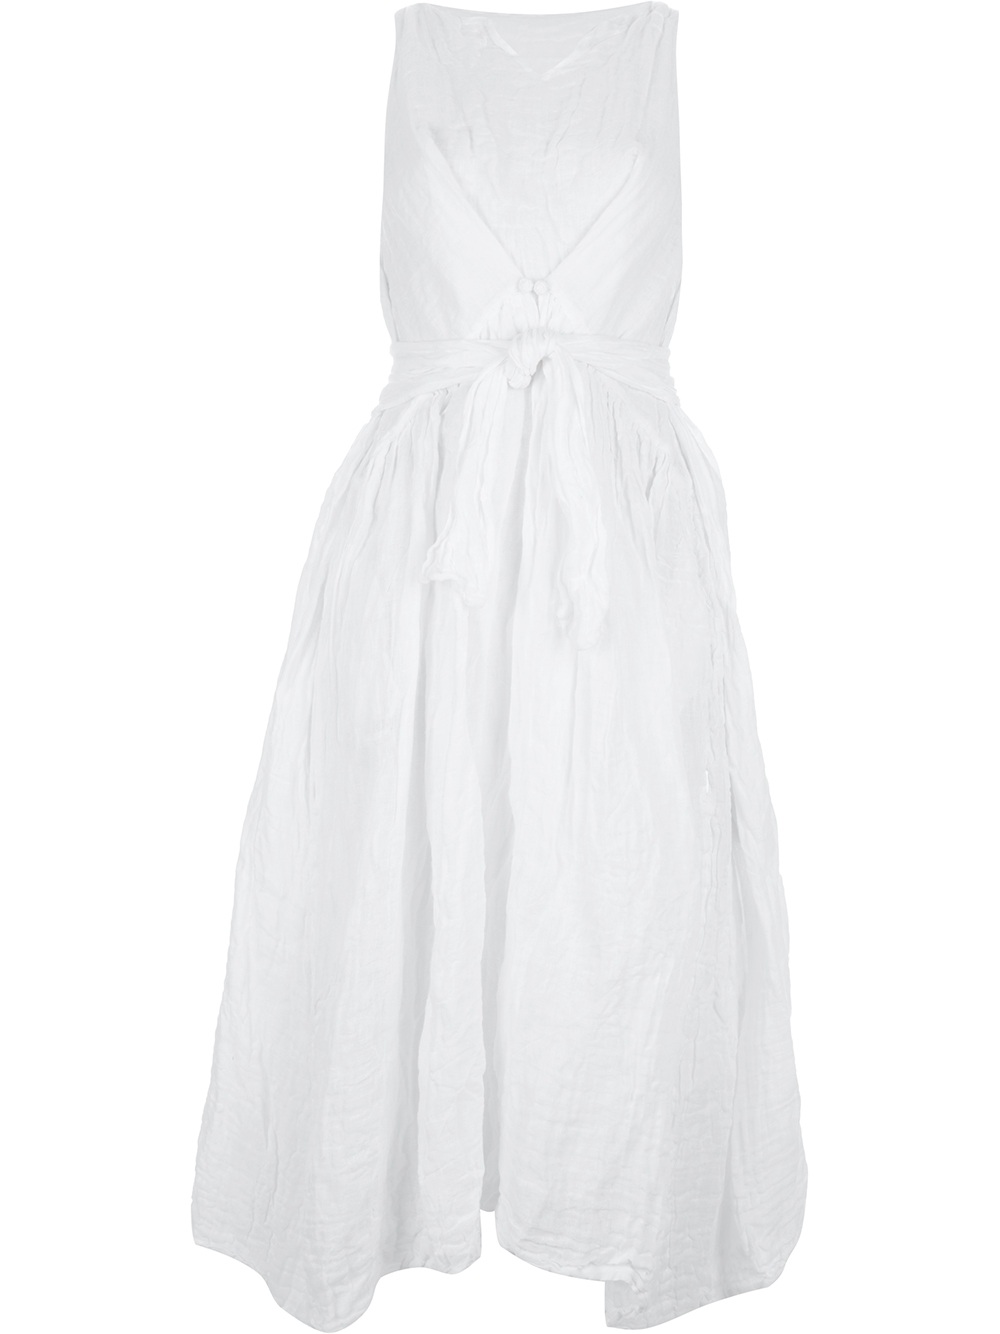 Daniela gregis Wrinkled Effect Linen Dress in White | Lyst